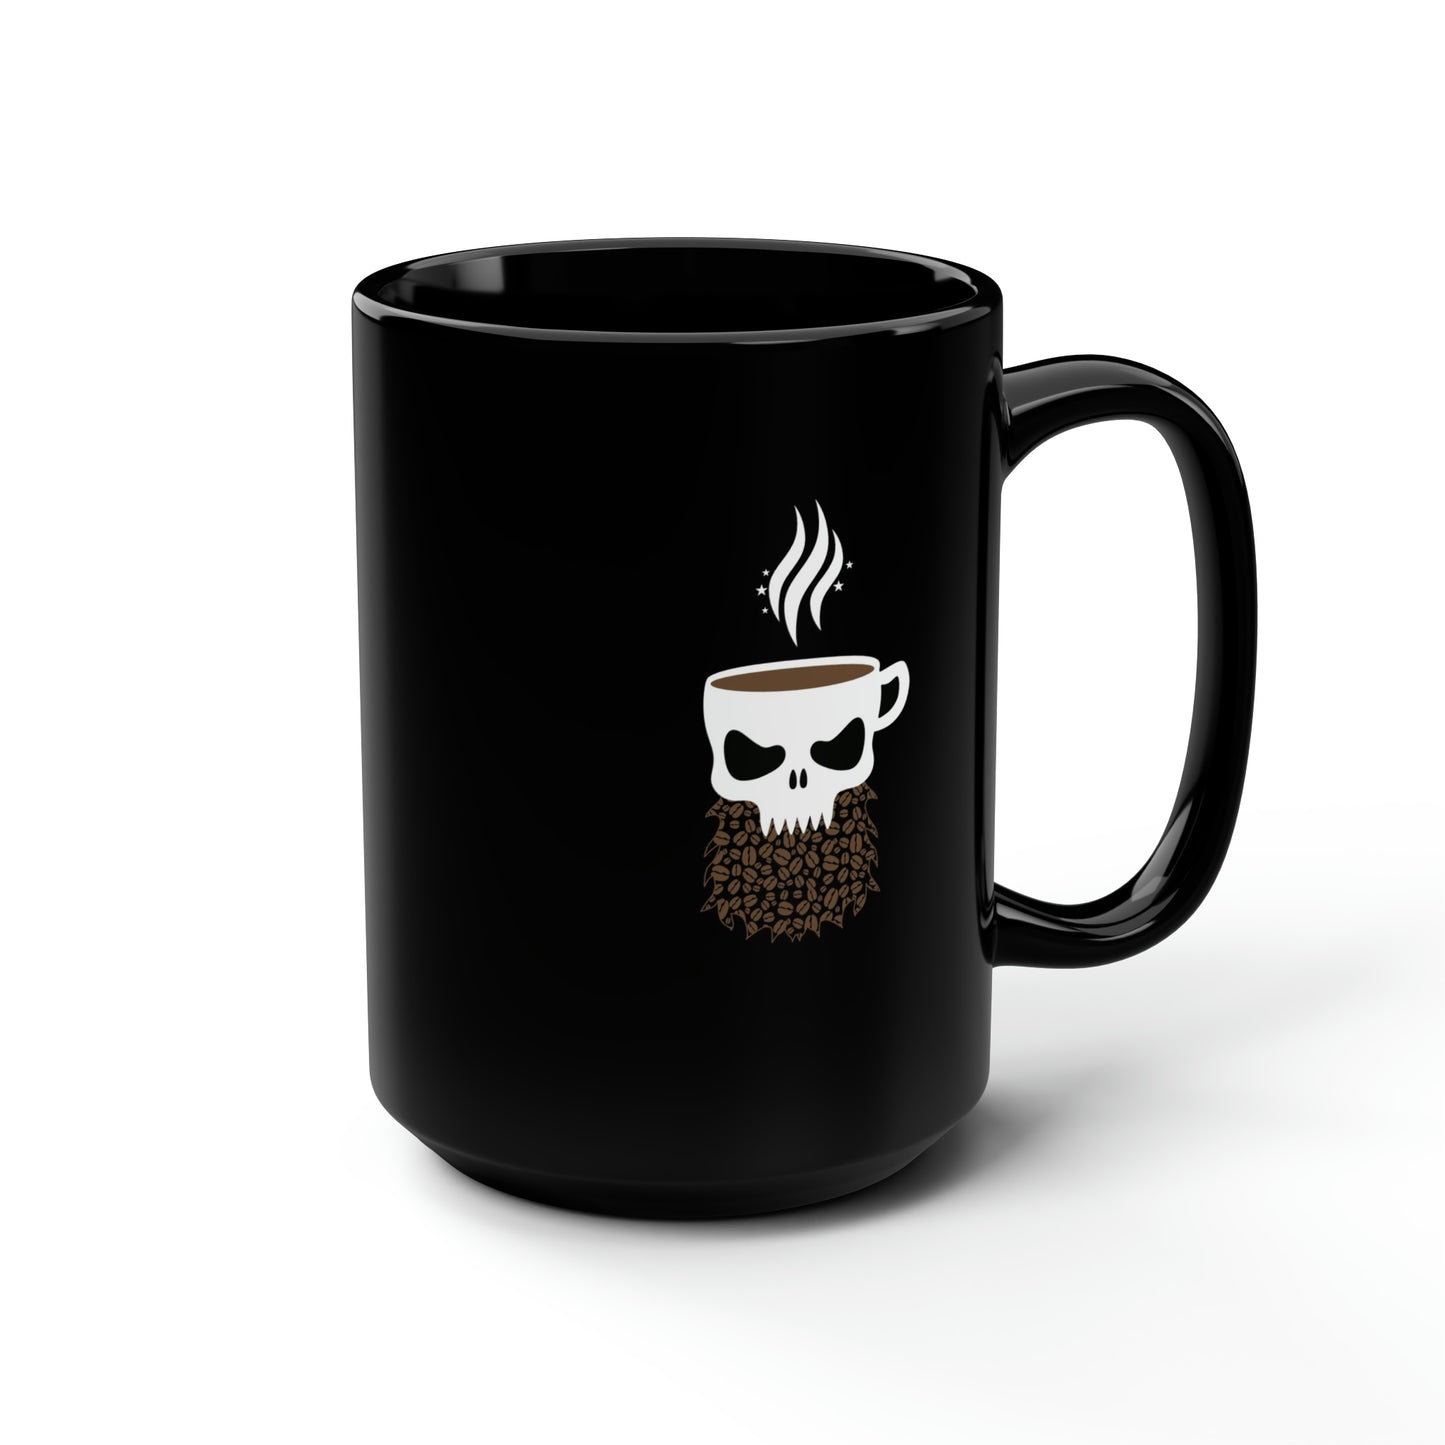 KAFX Body Black Coffee Mug, 15oz